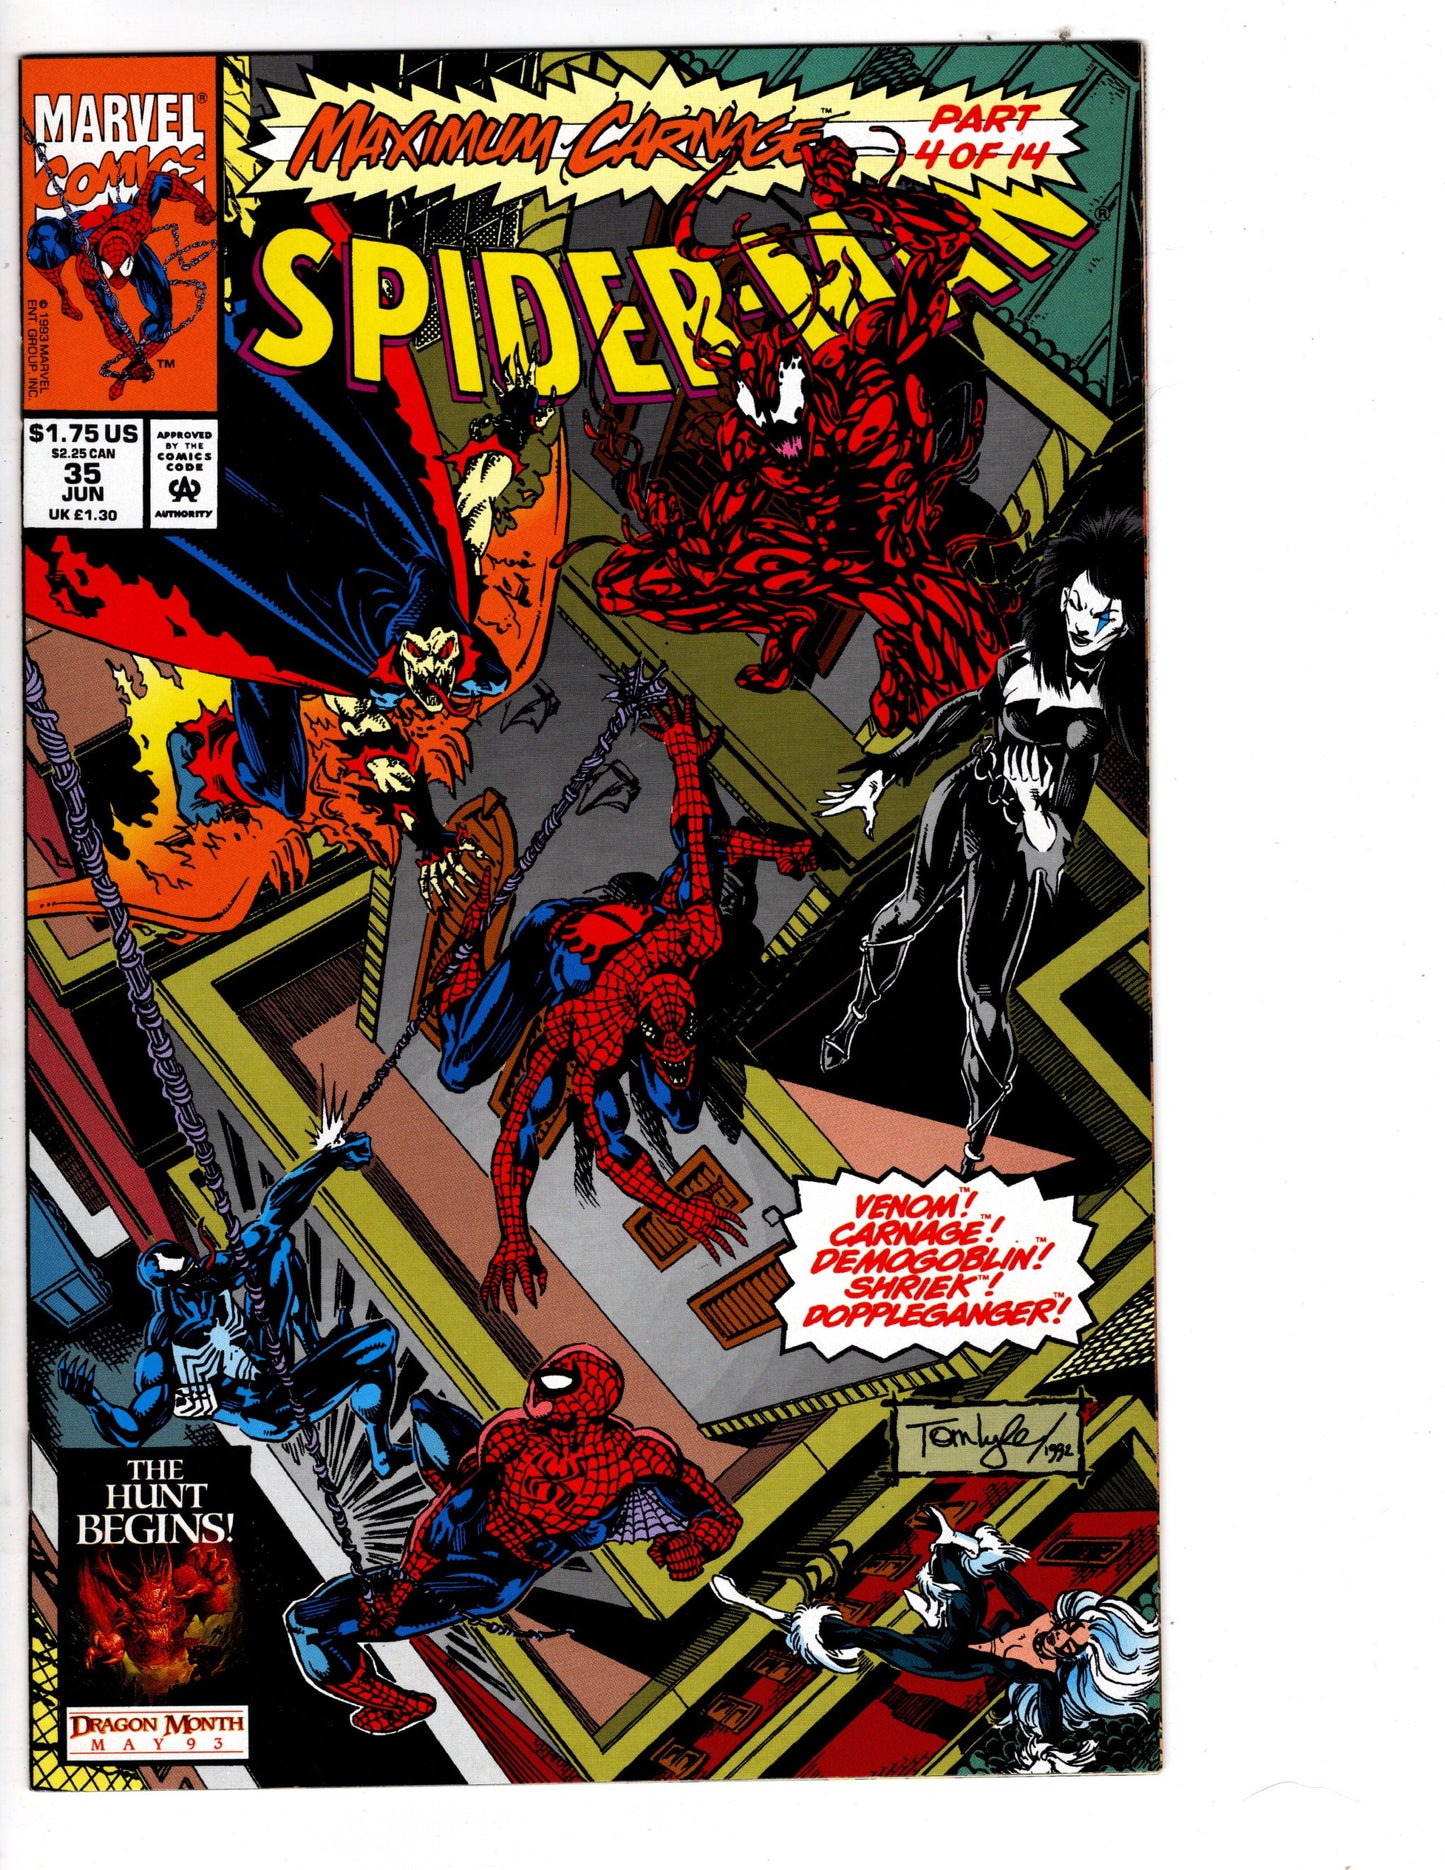 Spider-Man #35